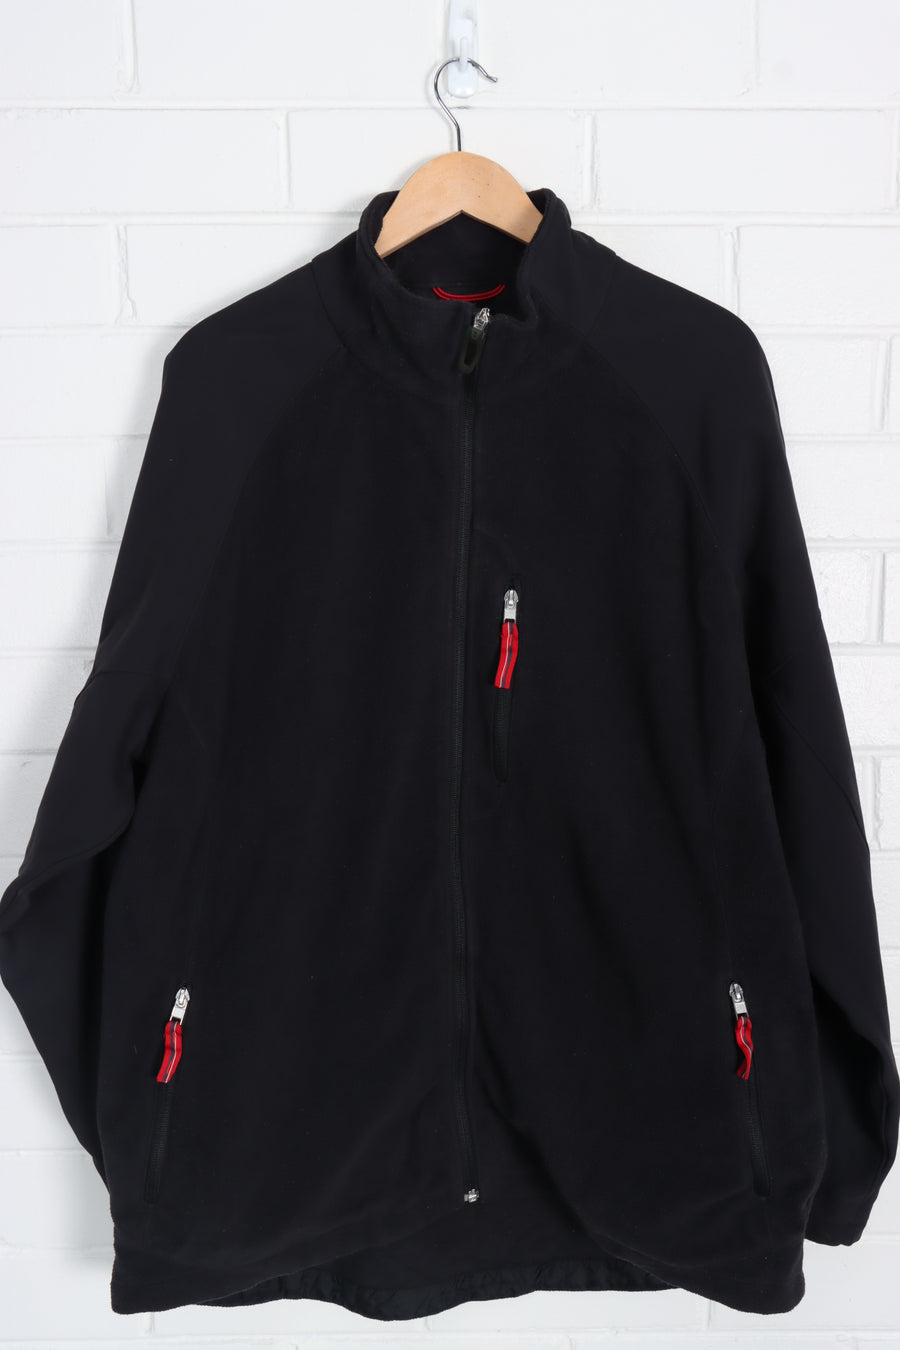 NIKE Black & Red Embroidered Swoosh Panel Fleece Jacket (XXL)